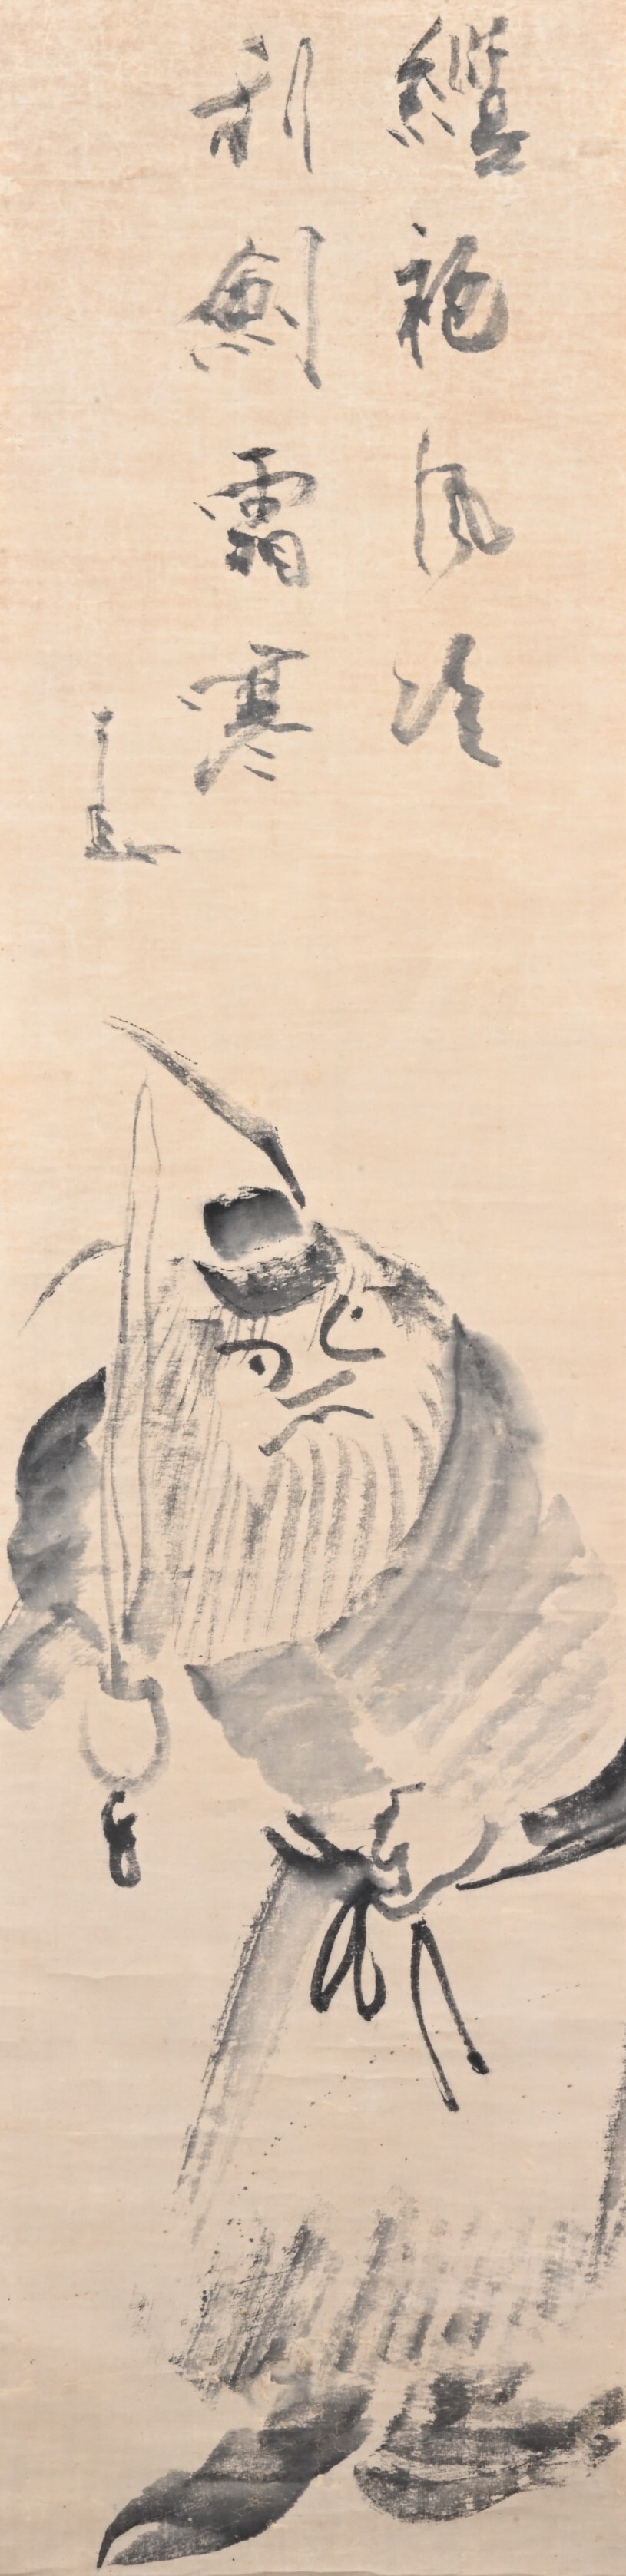 仙厓義梵画賛《鍾馗図》紙本・墨画、江戸時代後期、寳林寺